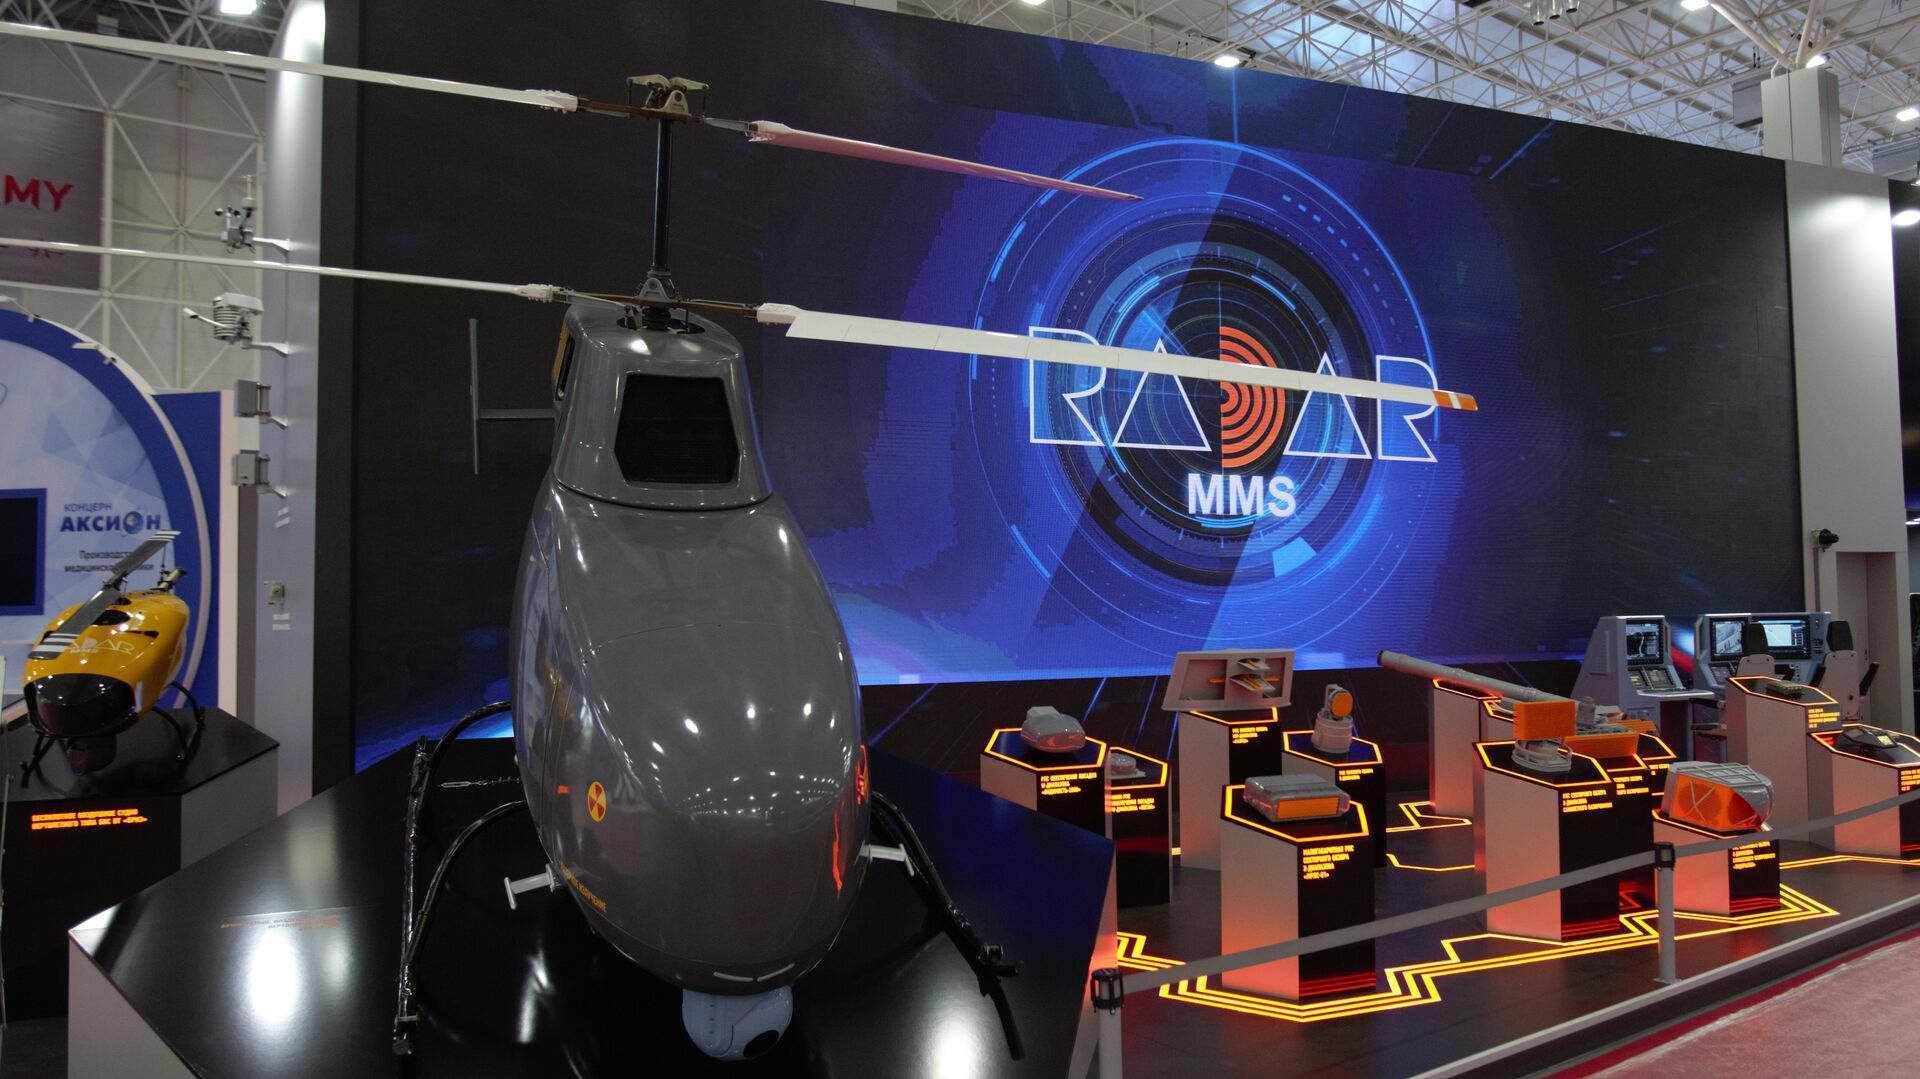 Радар ммс хочет превратить пассажирский самолет Ил-114-300 в морского разведчика